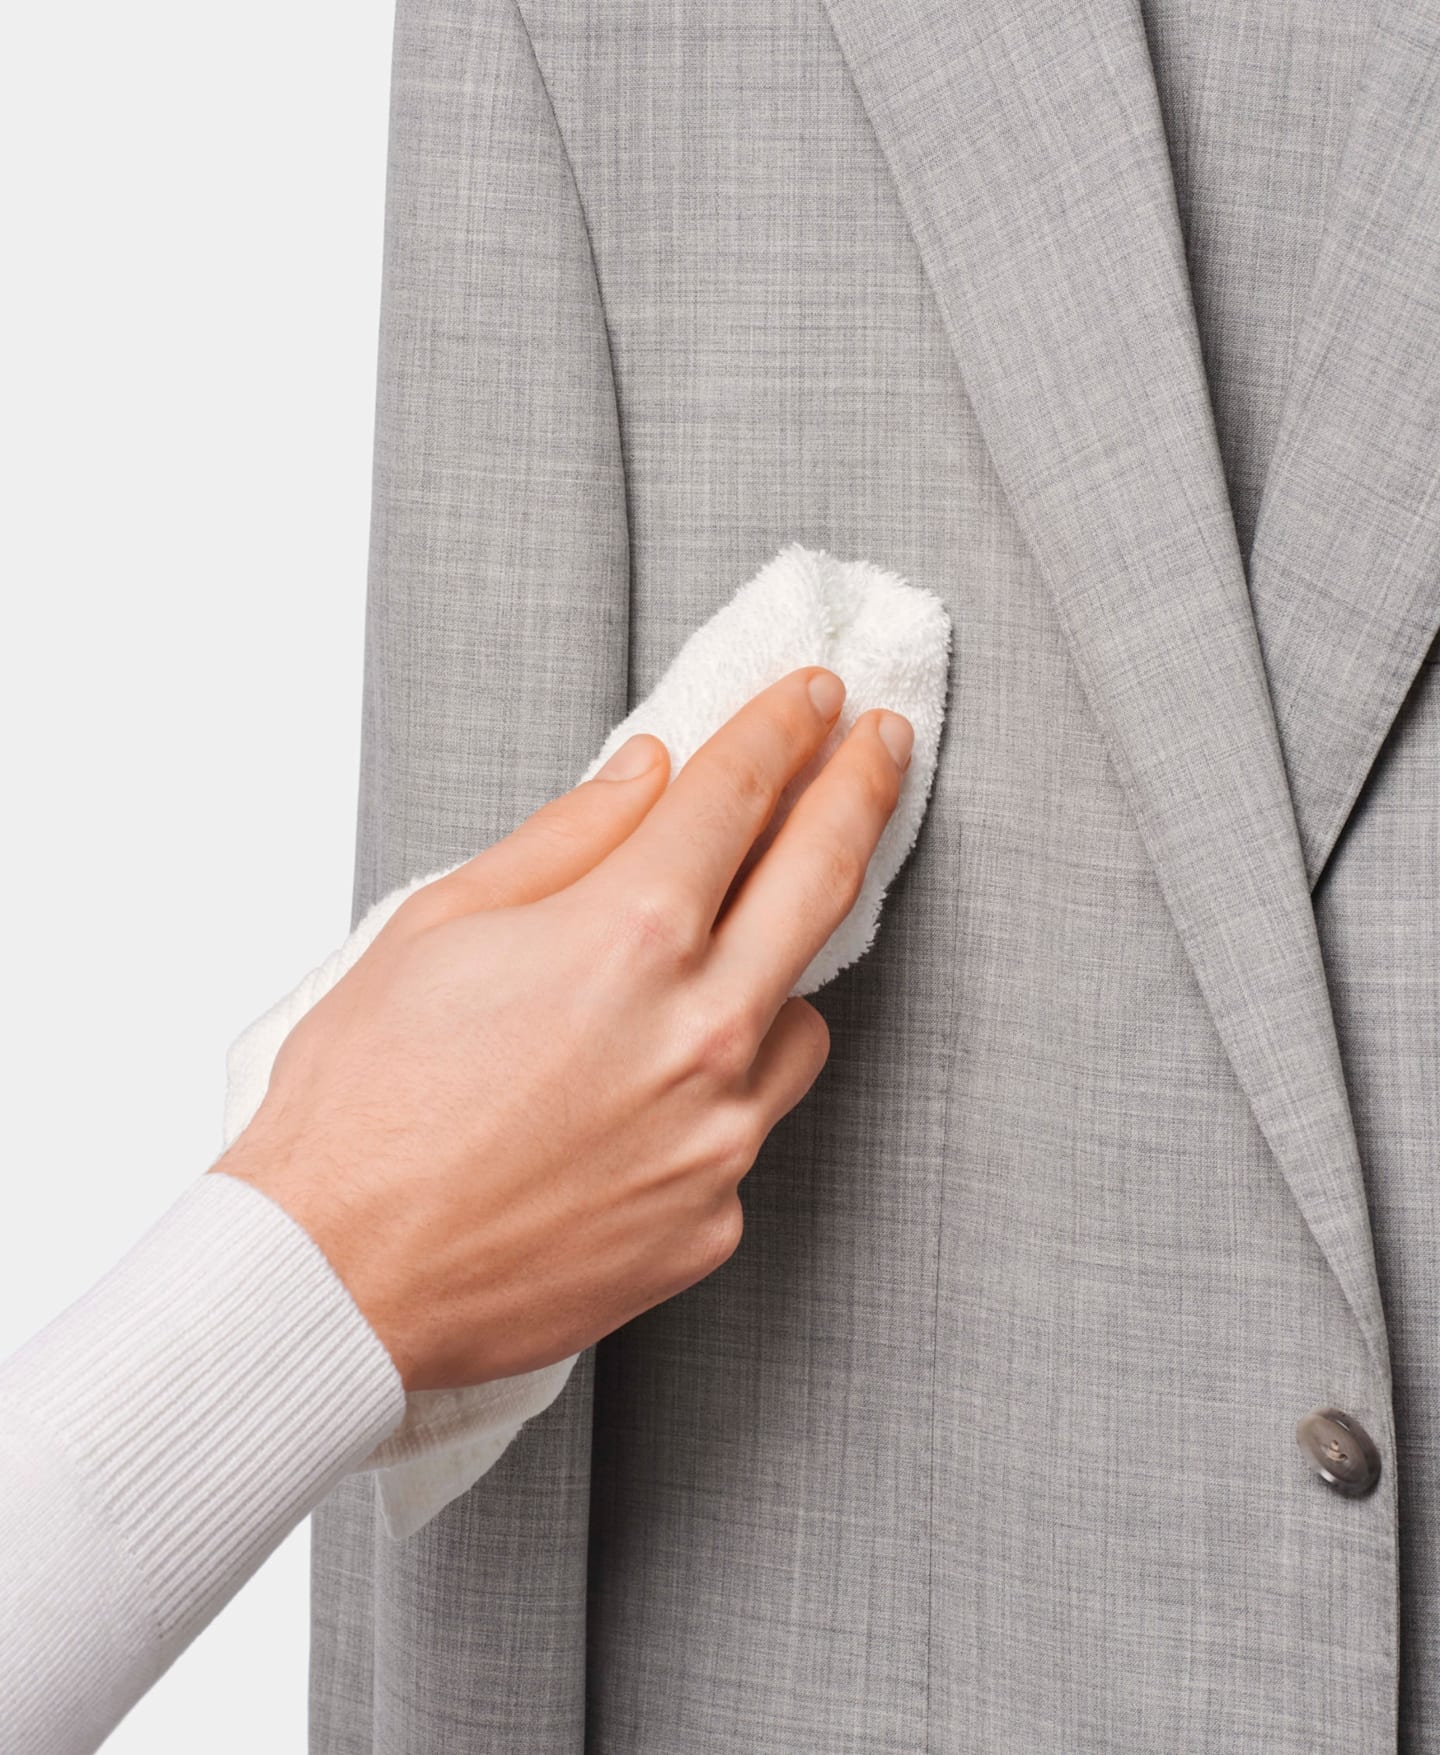 Éliminer une tache sur votre costume à l'aide d'un chiffon humide